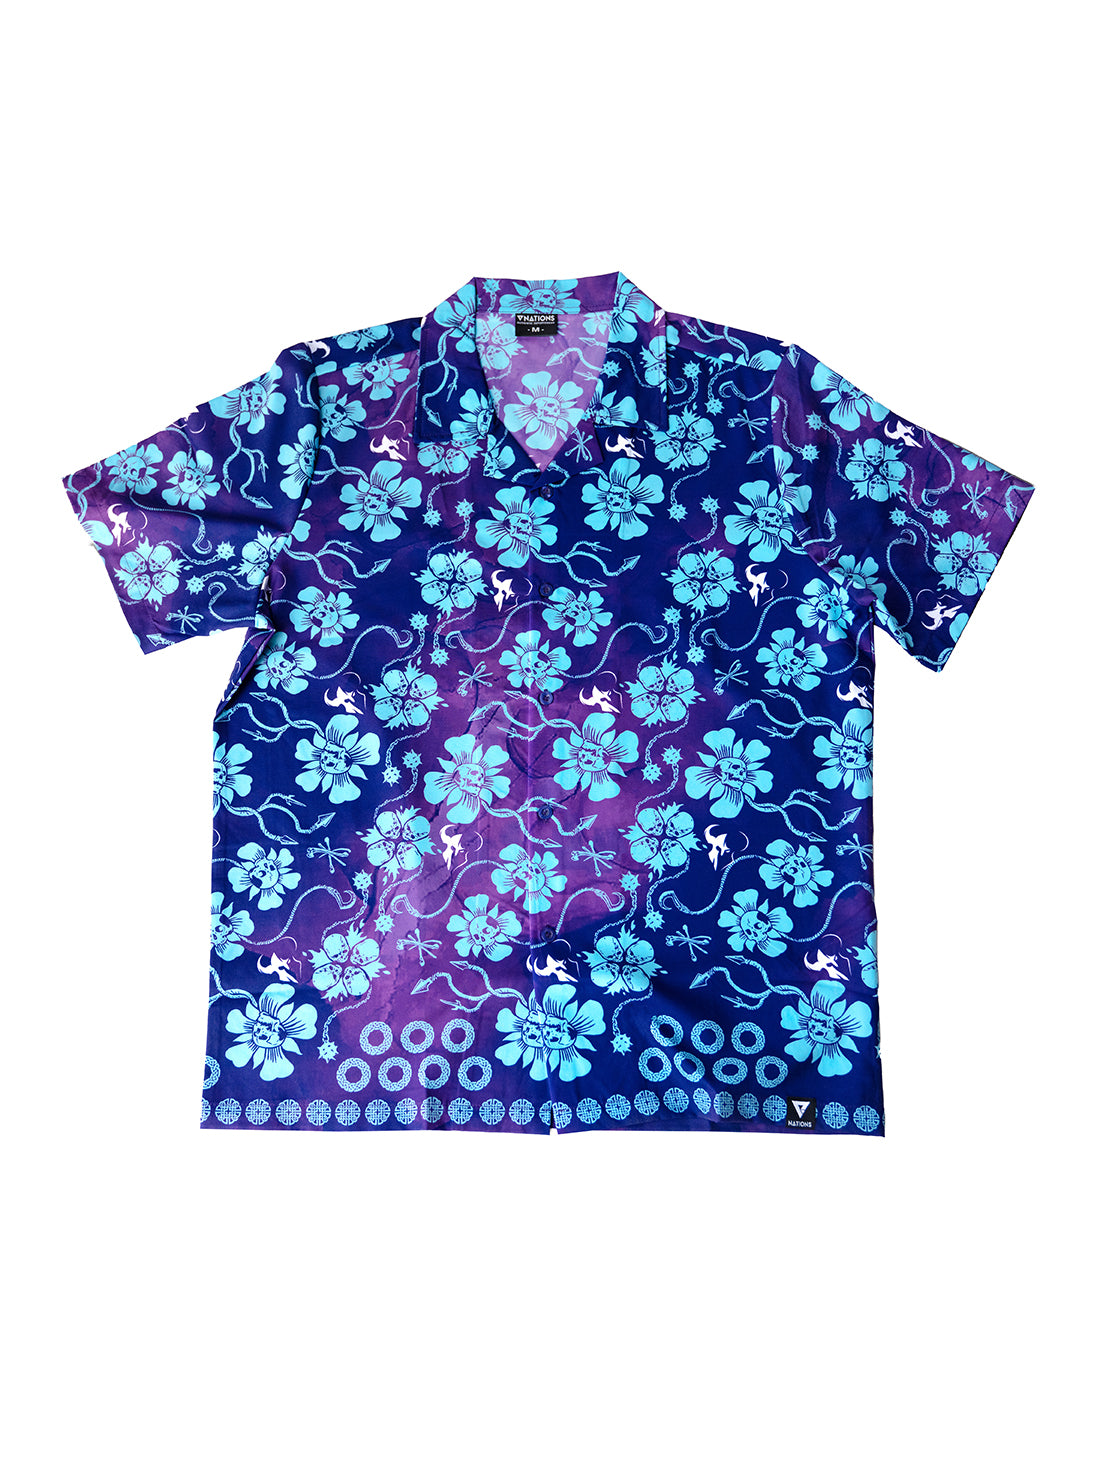 Røkkr Hawaiian Shirt